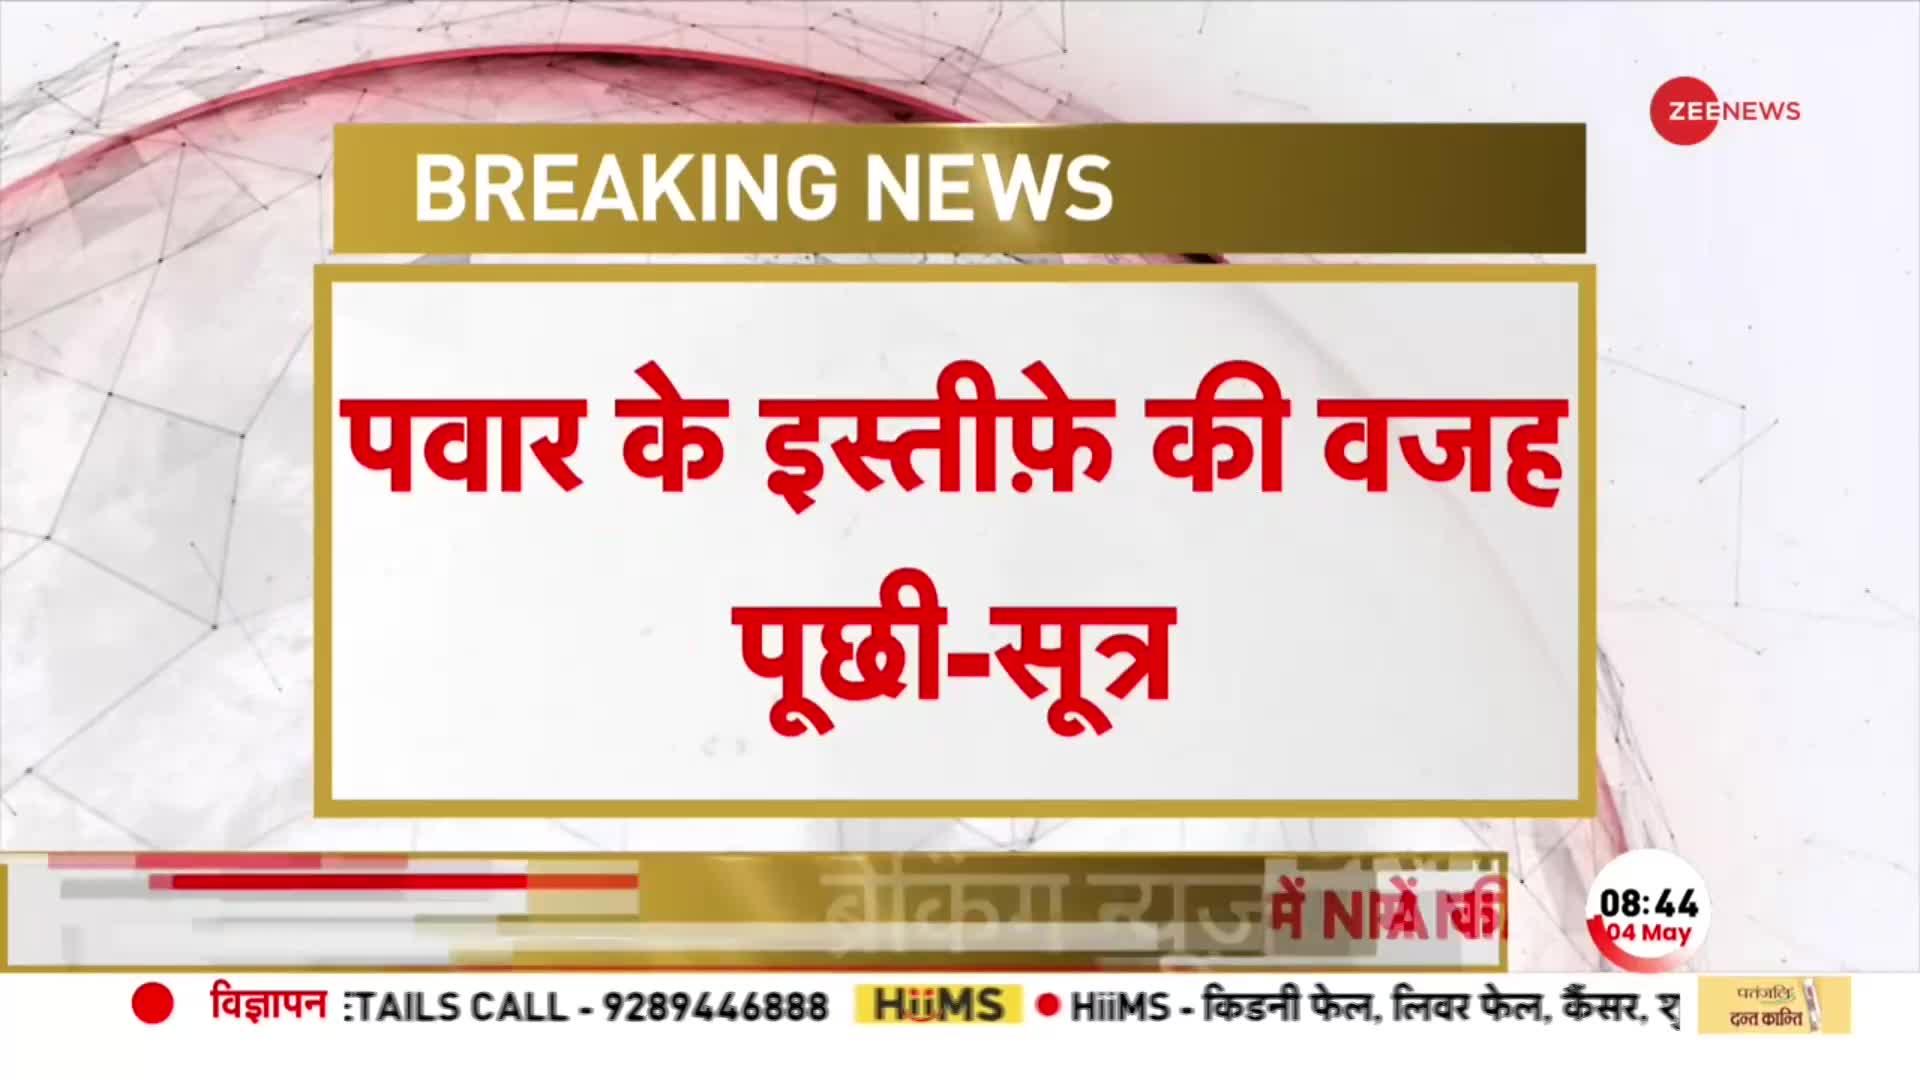 BREAKING NEWS: Rahul Gandhi ने Supriya Sule से की बात, Sharad Pawar के इस्तीफे की वजह पूछी- सूत्र